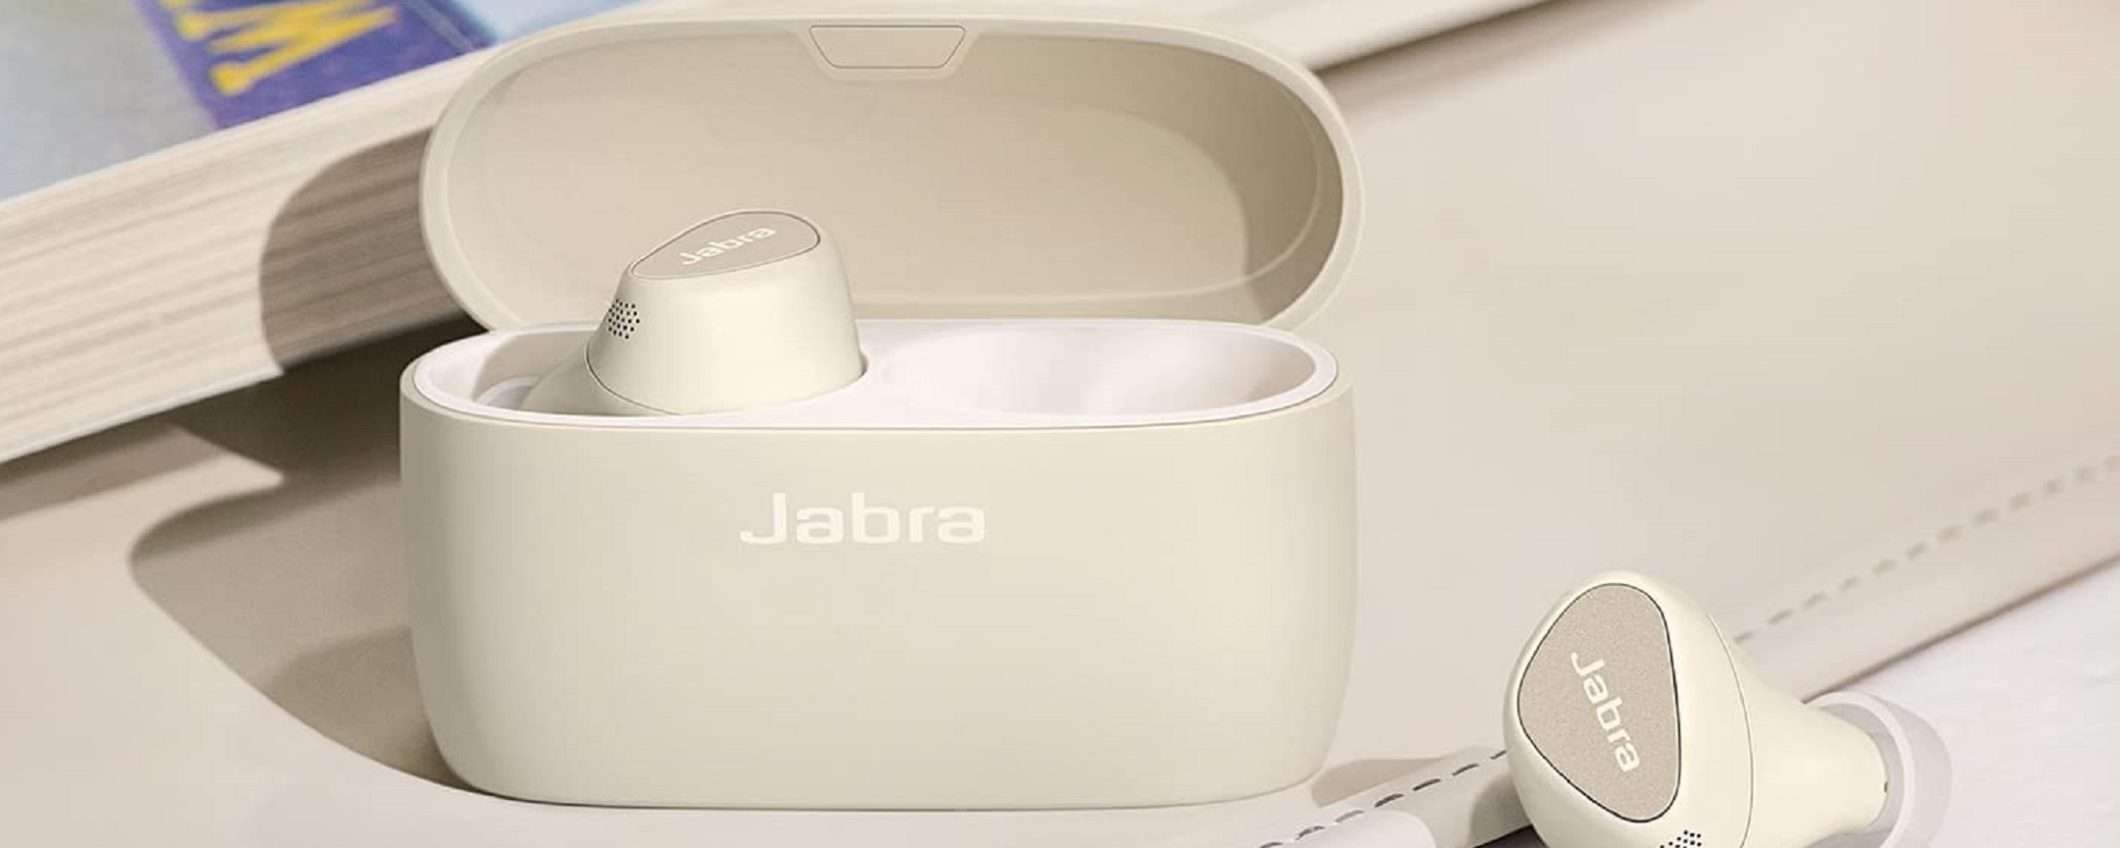 Jabra Elite 5 a un prezzo incredibile per le Offerte di Primavera di Amazon